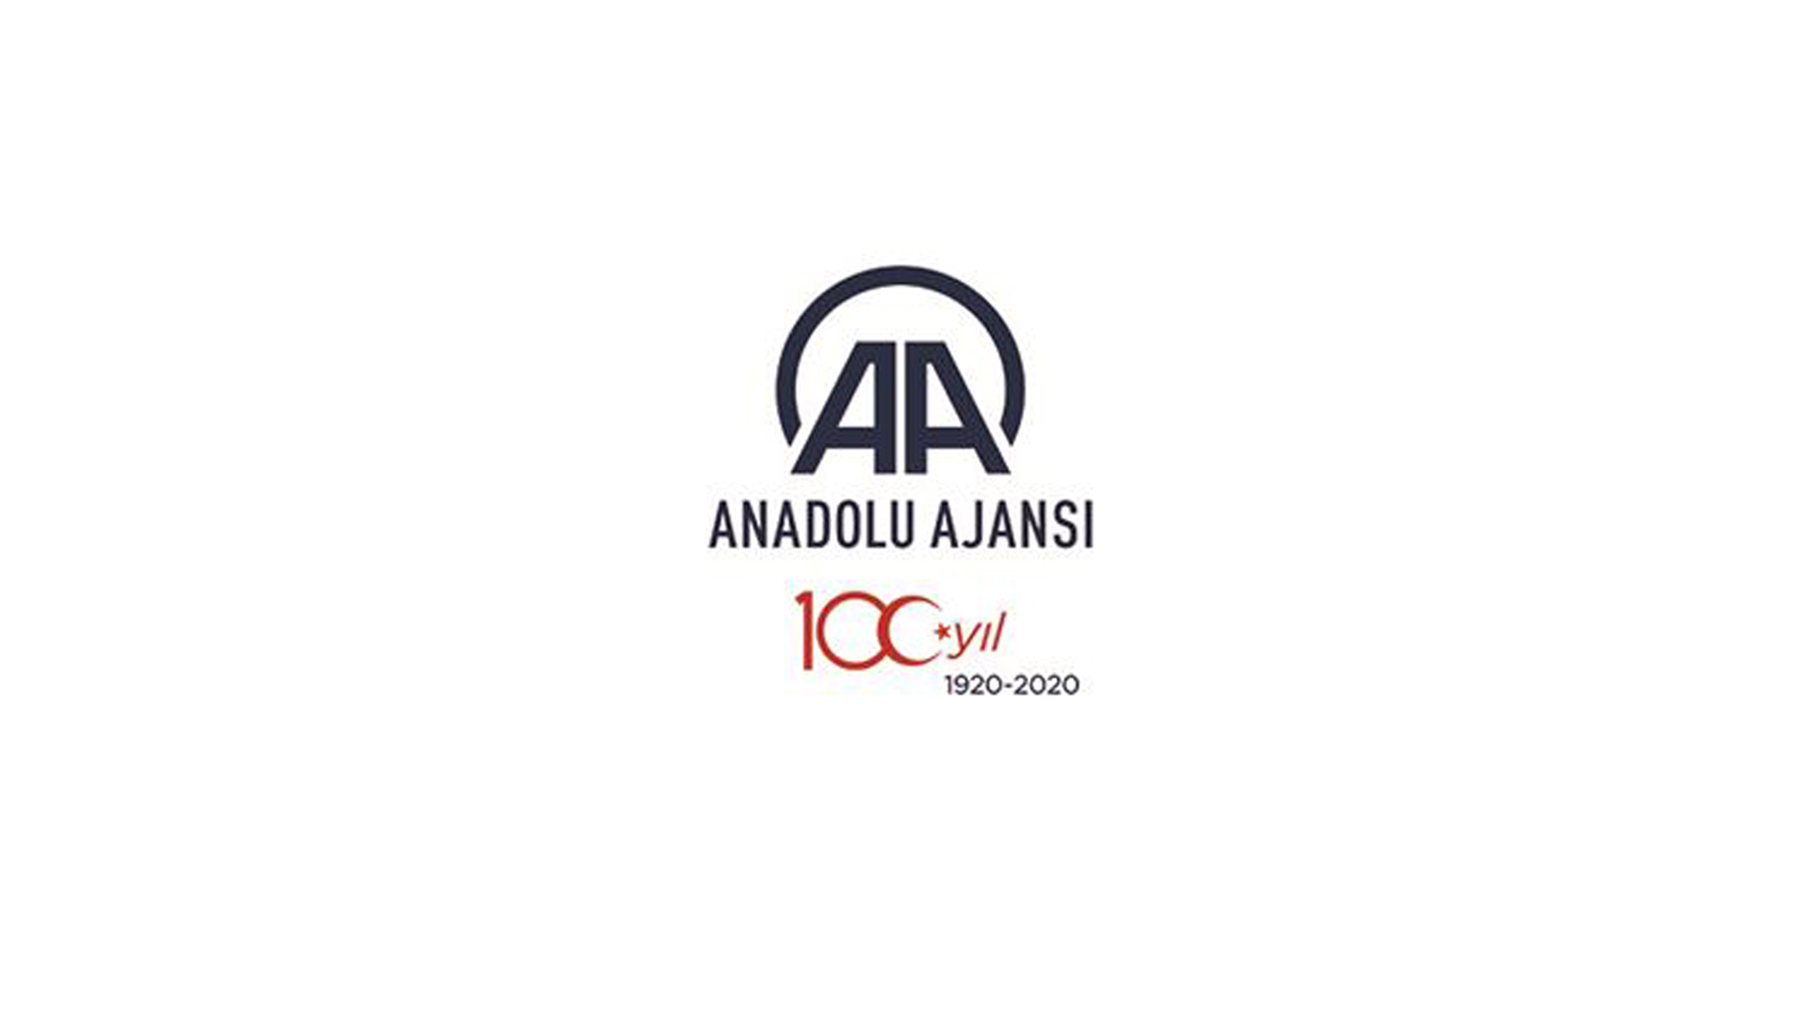 Esat Delihasan Anadolu Ajansı'nın 100. yılını kutladı